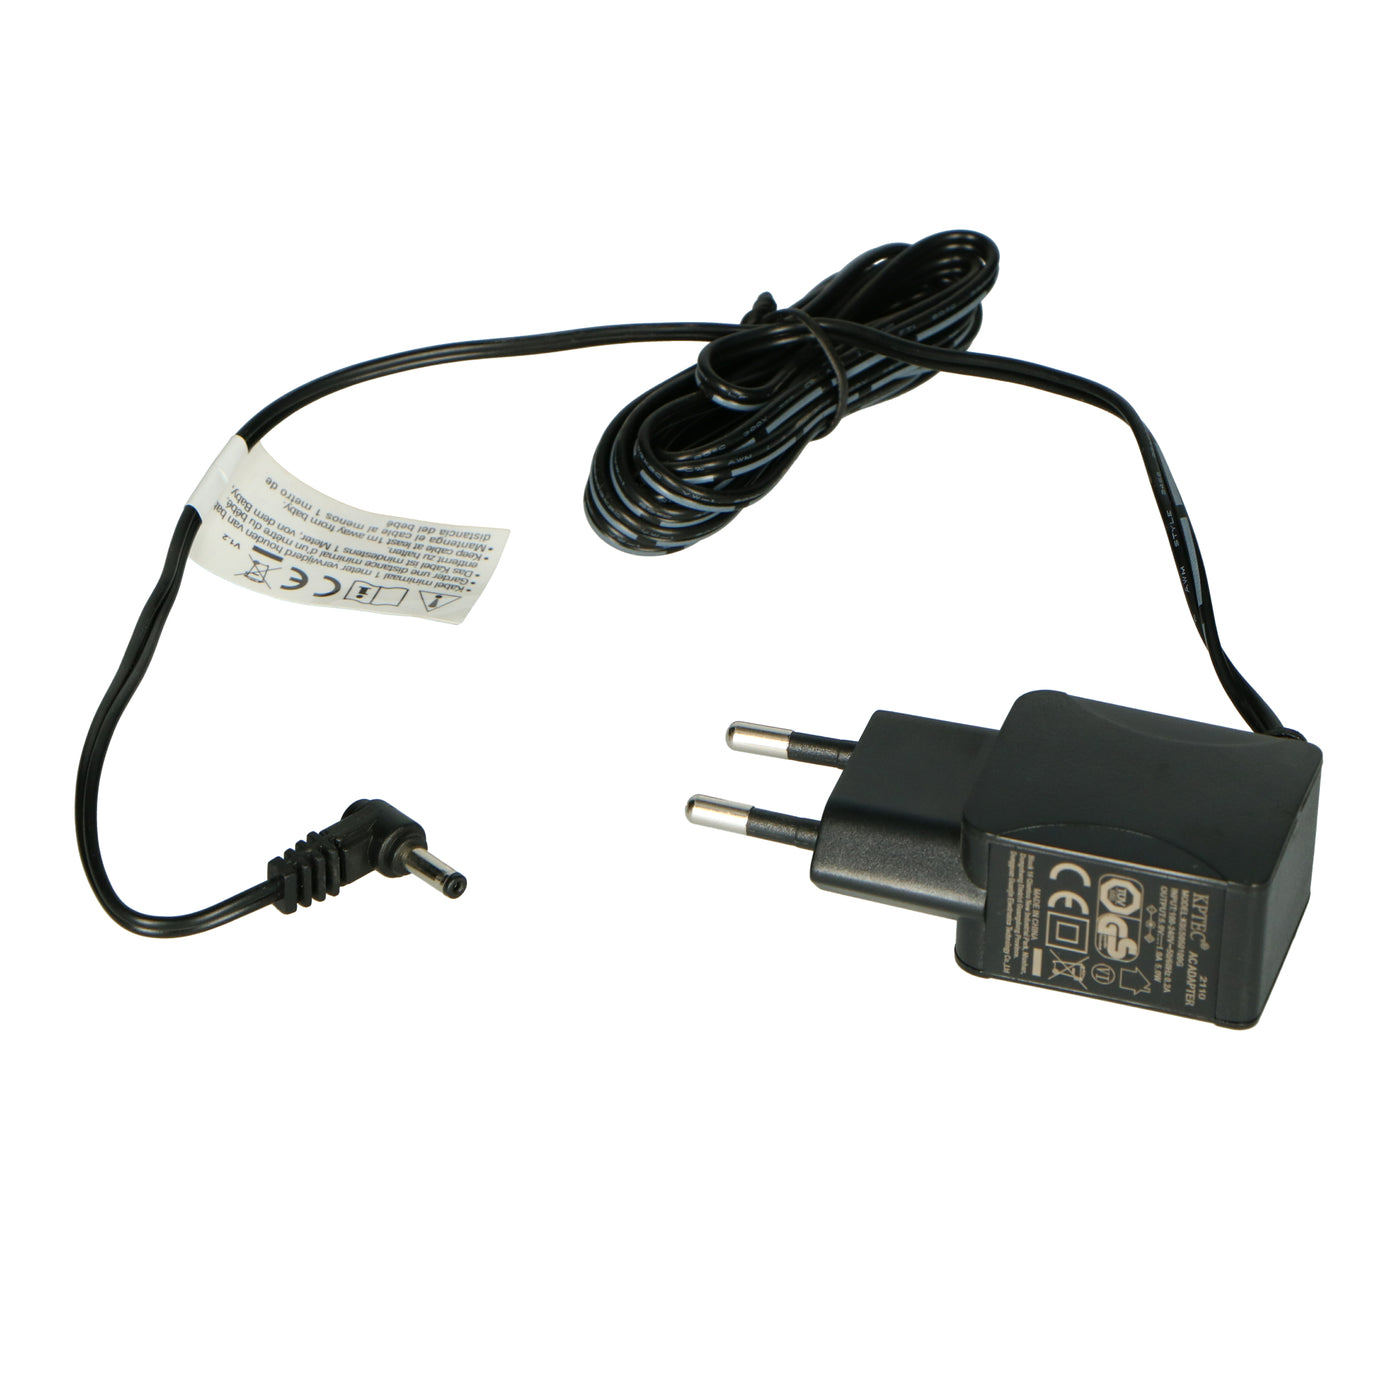 P003202 - Adapter parent/baby unit DVM71BK